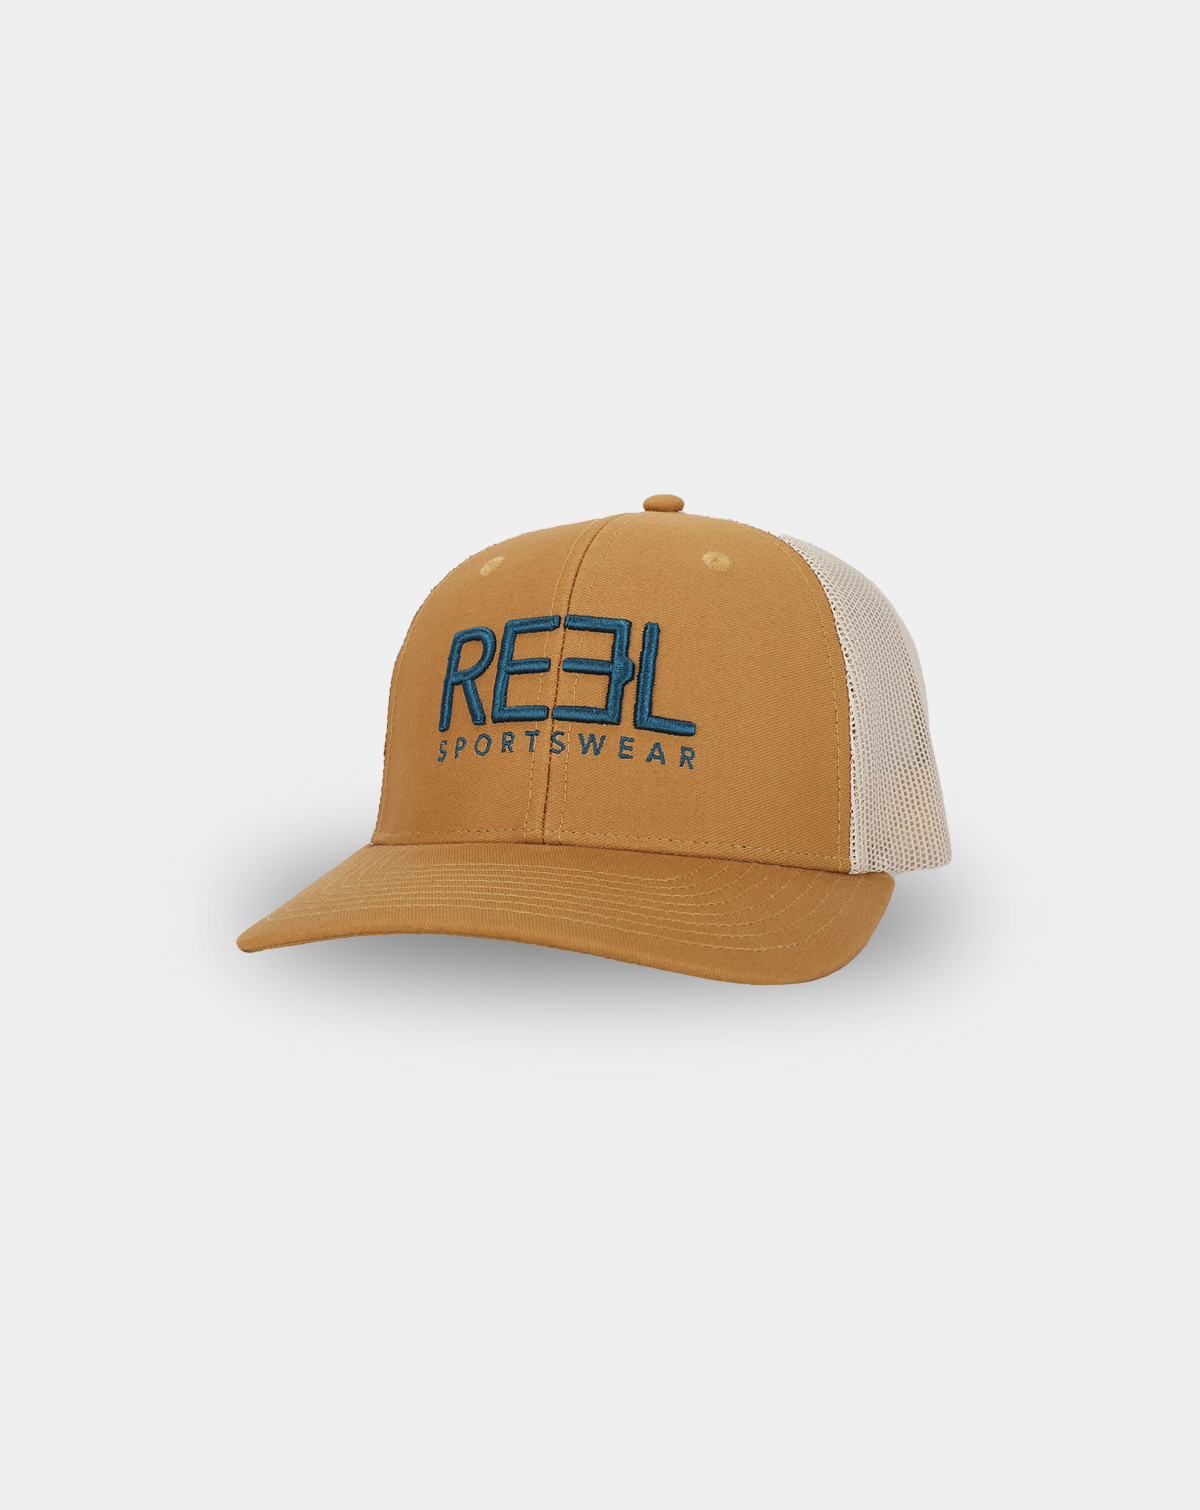 Hats & Accessories - Reel Sportswear